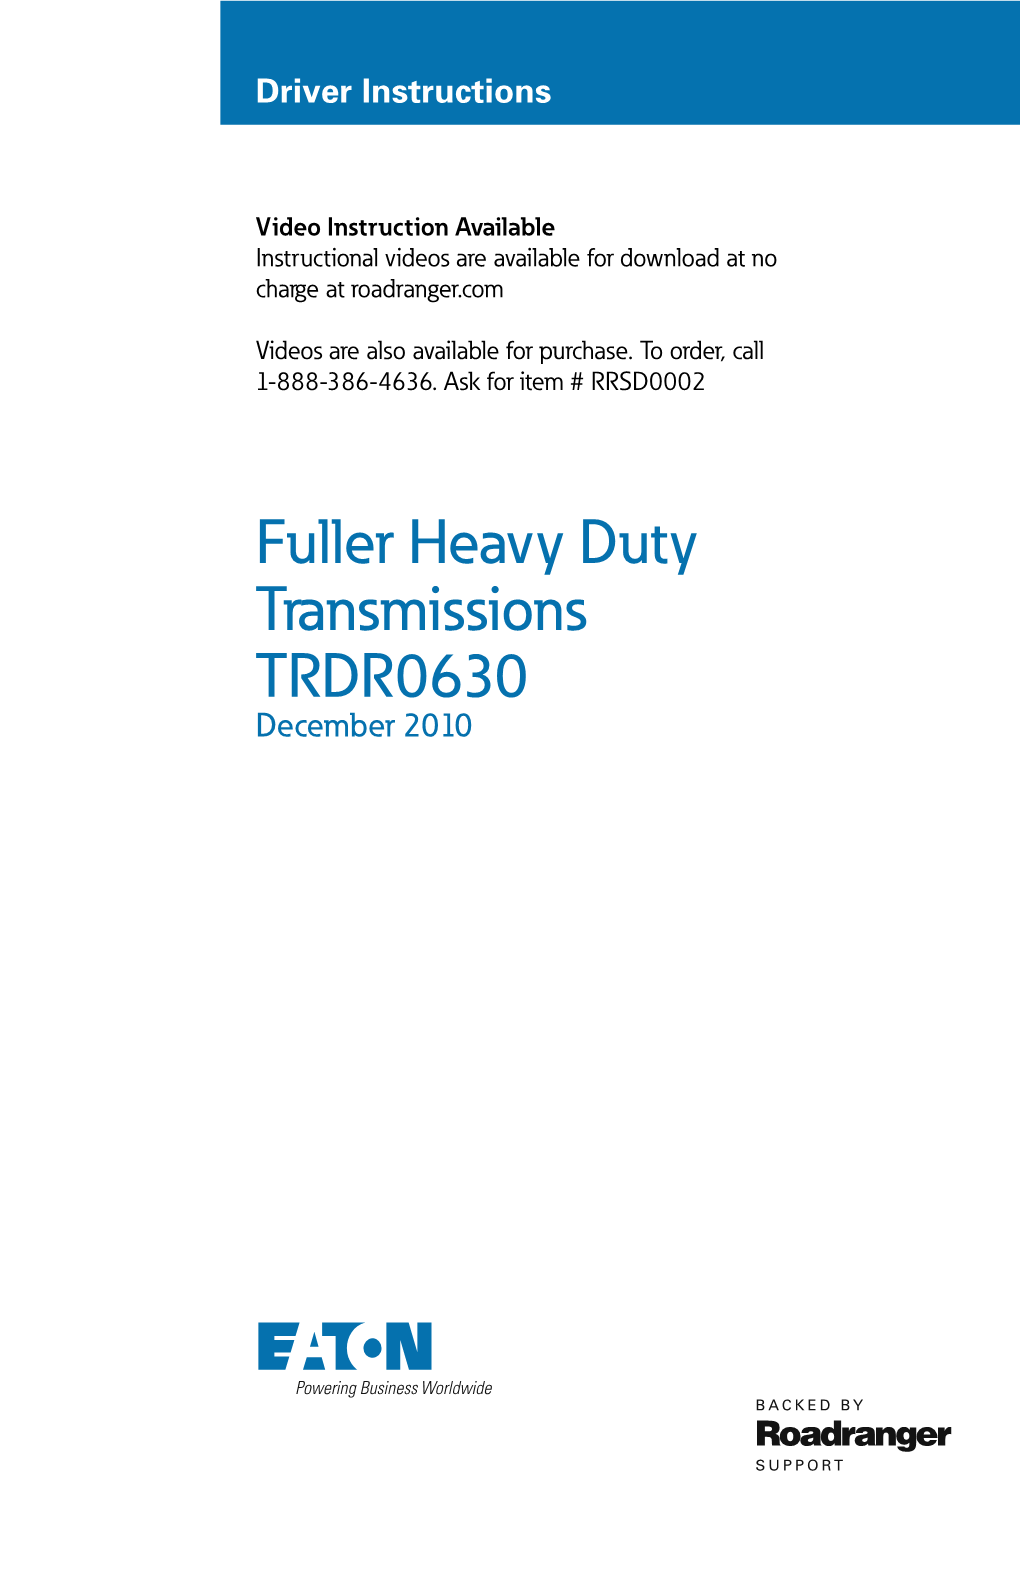 Fuller Heavy Duty Transmissions TRDR0630 December 2010 General Information